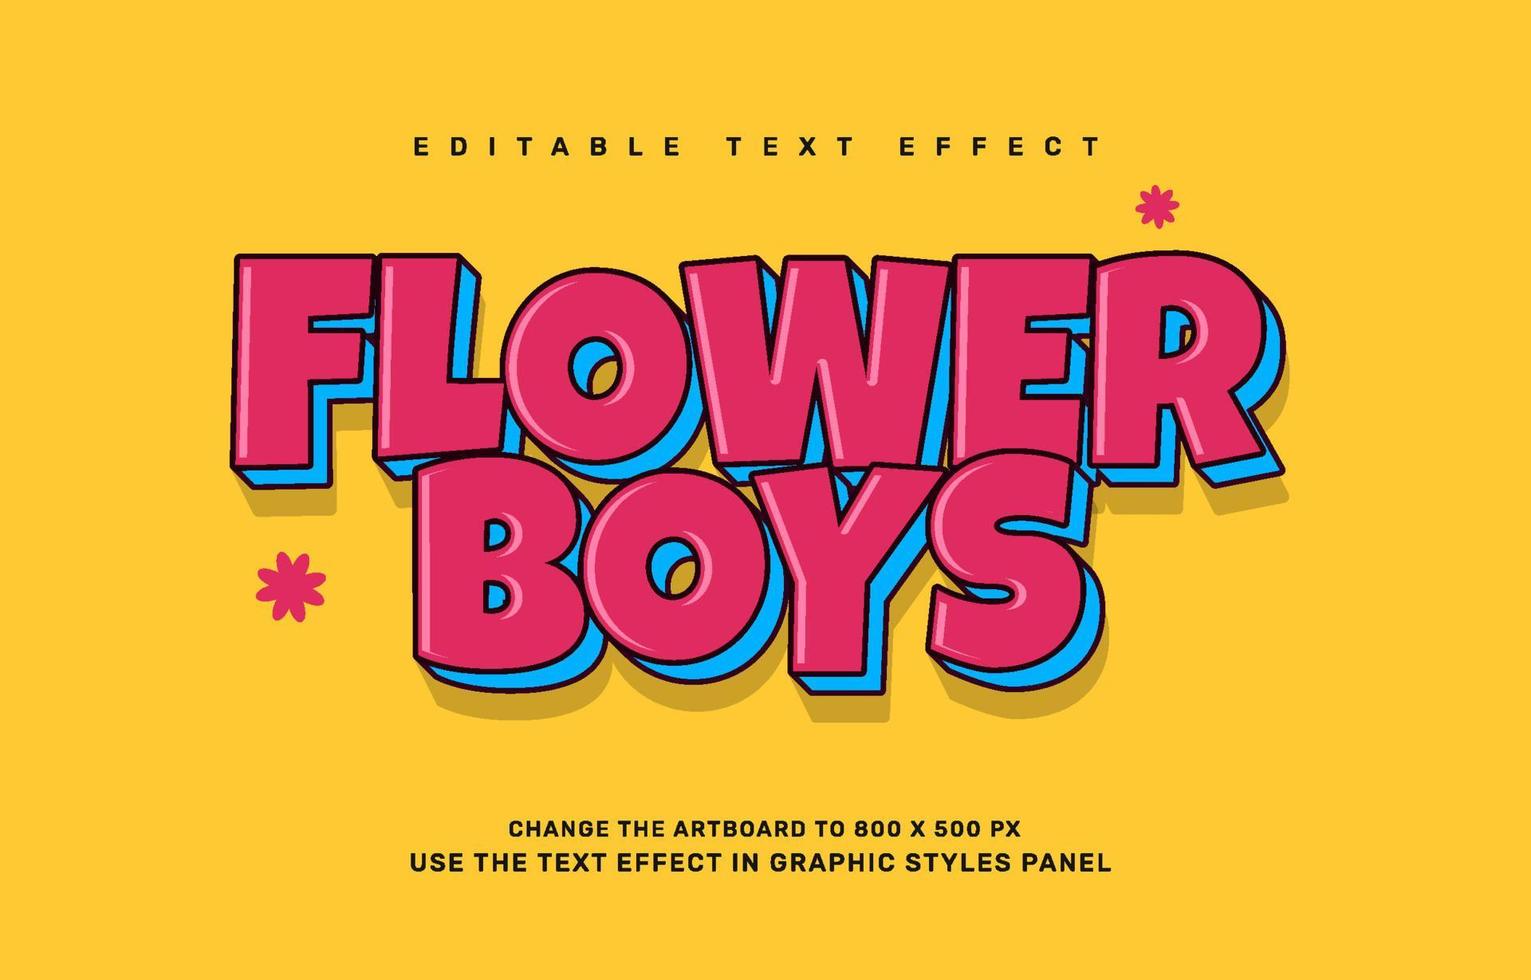 Flower boys editable text effect template vector